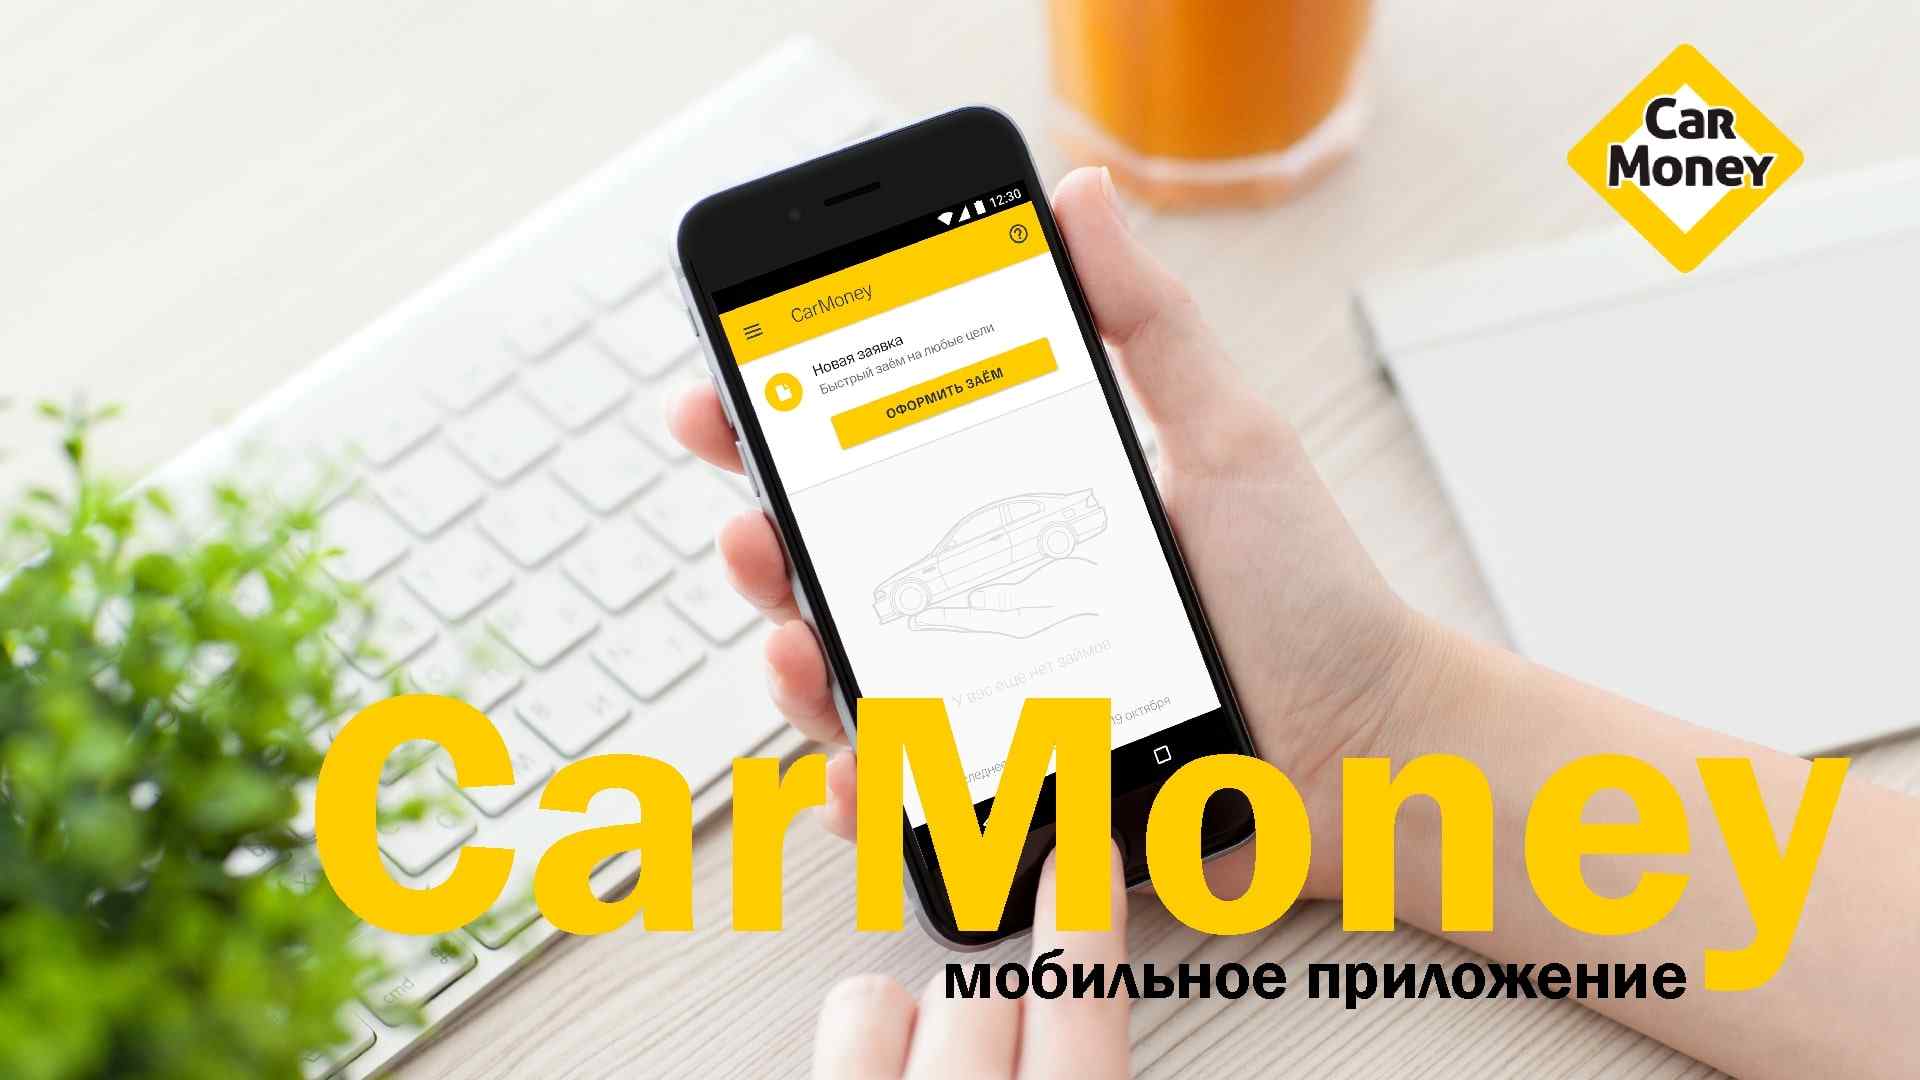 Иллюстрация к странице мобильное приложение CarMoney вошло в пятерку лучших в своем сегменте на сайте МФО CarMoney - выдача займа под залог